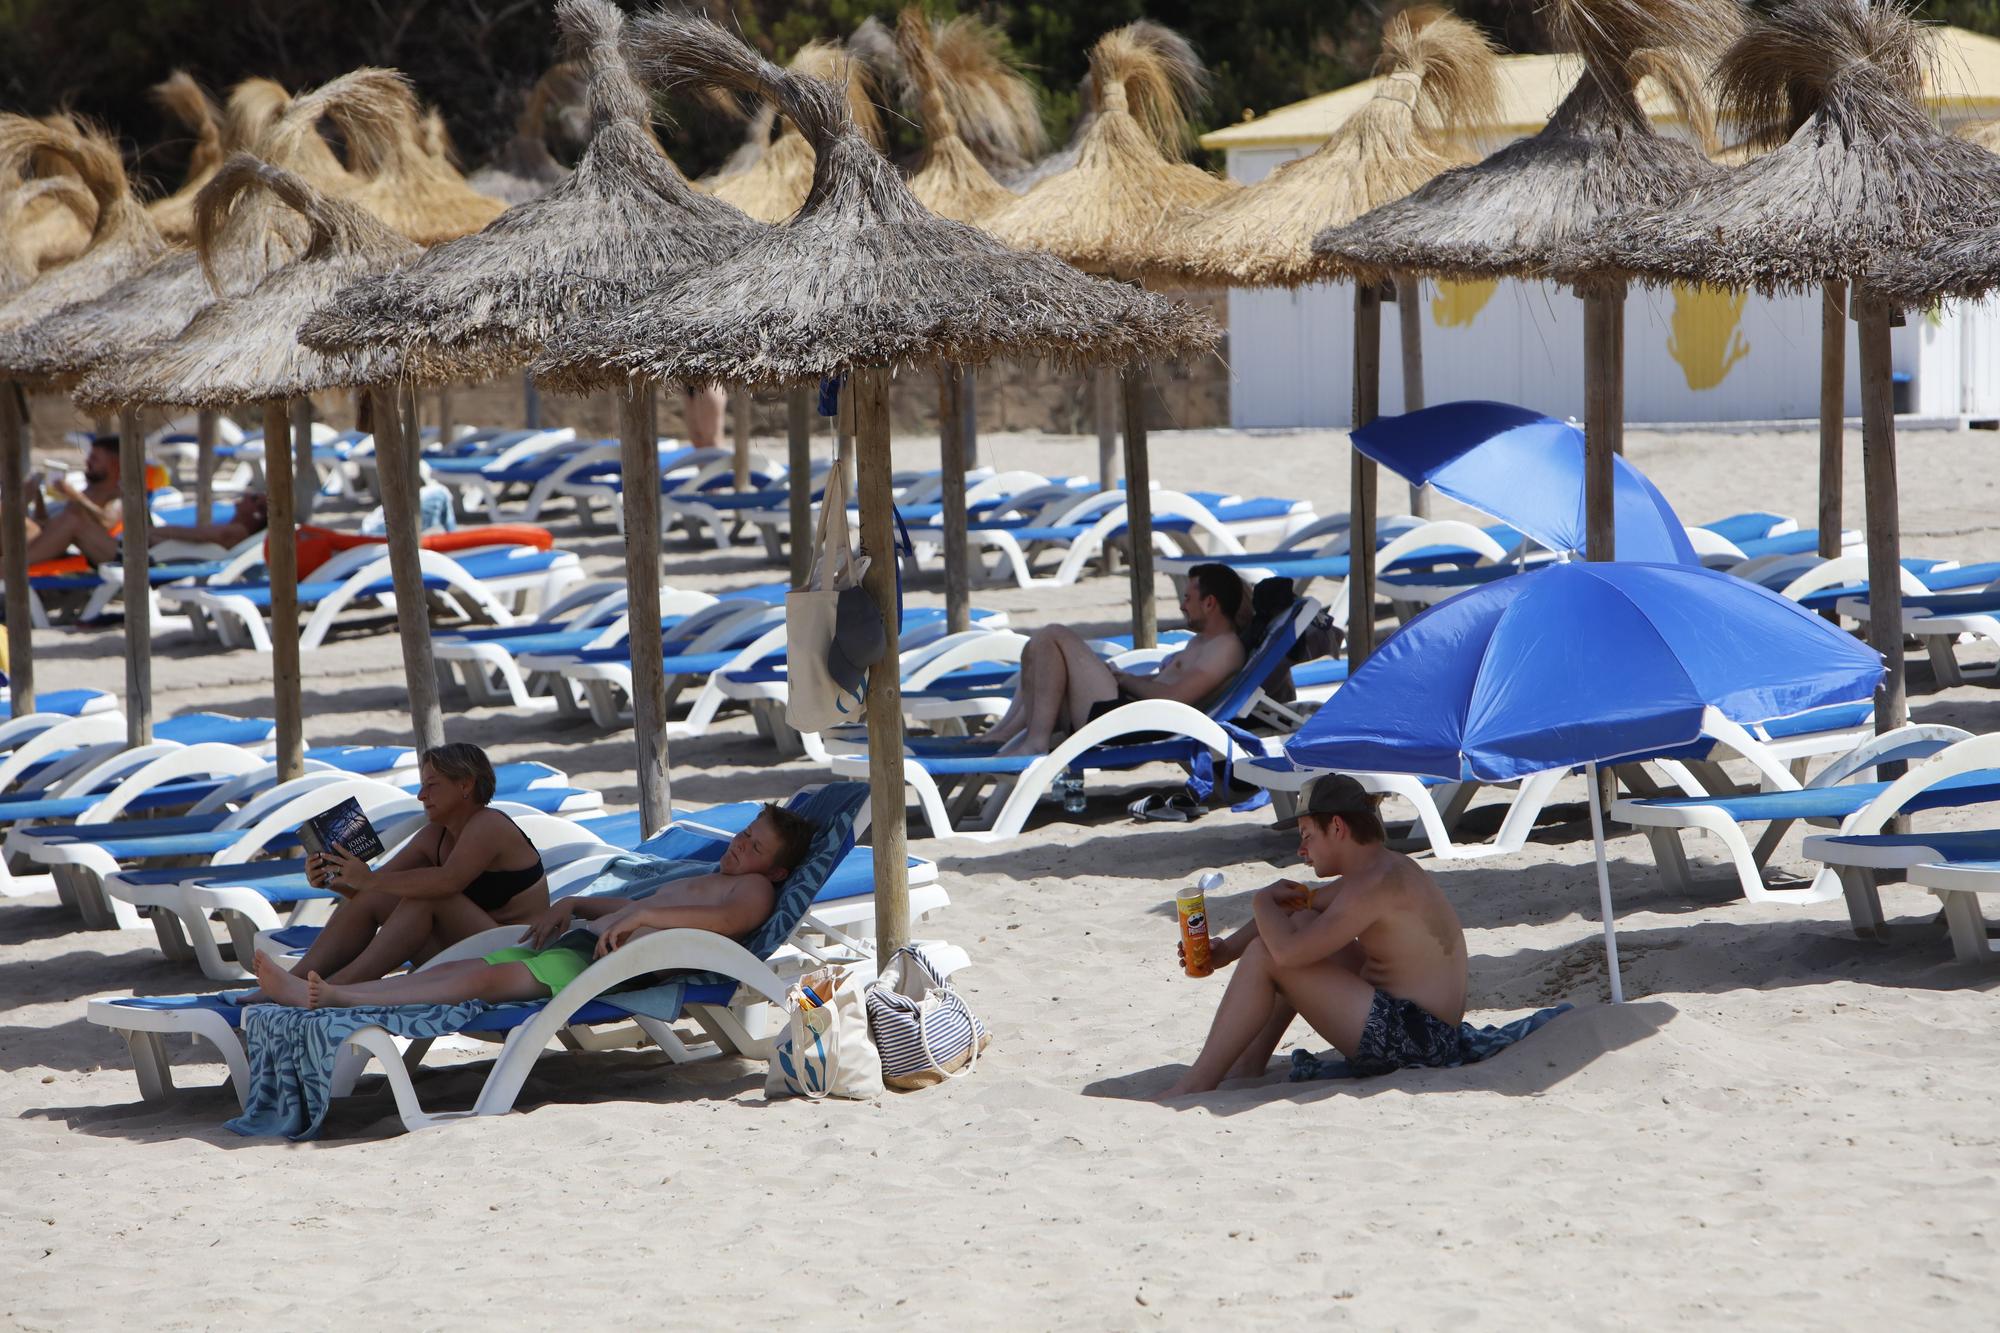 Sommer in Peguera: So genießen die Mallorca-Urlauber das Leben am beliebten Badestrand